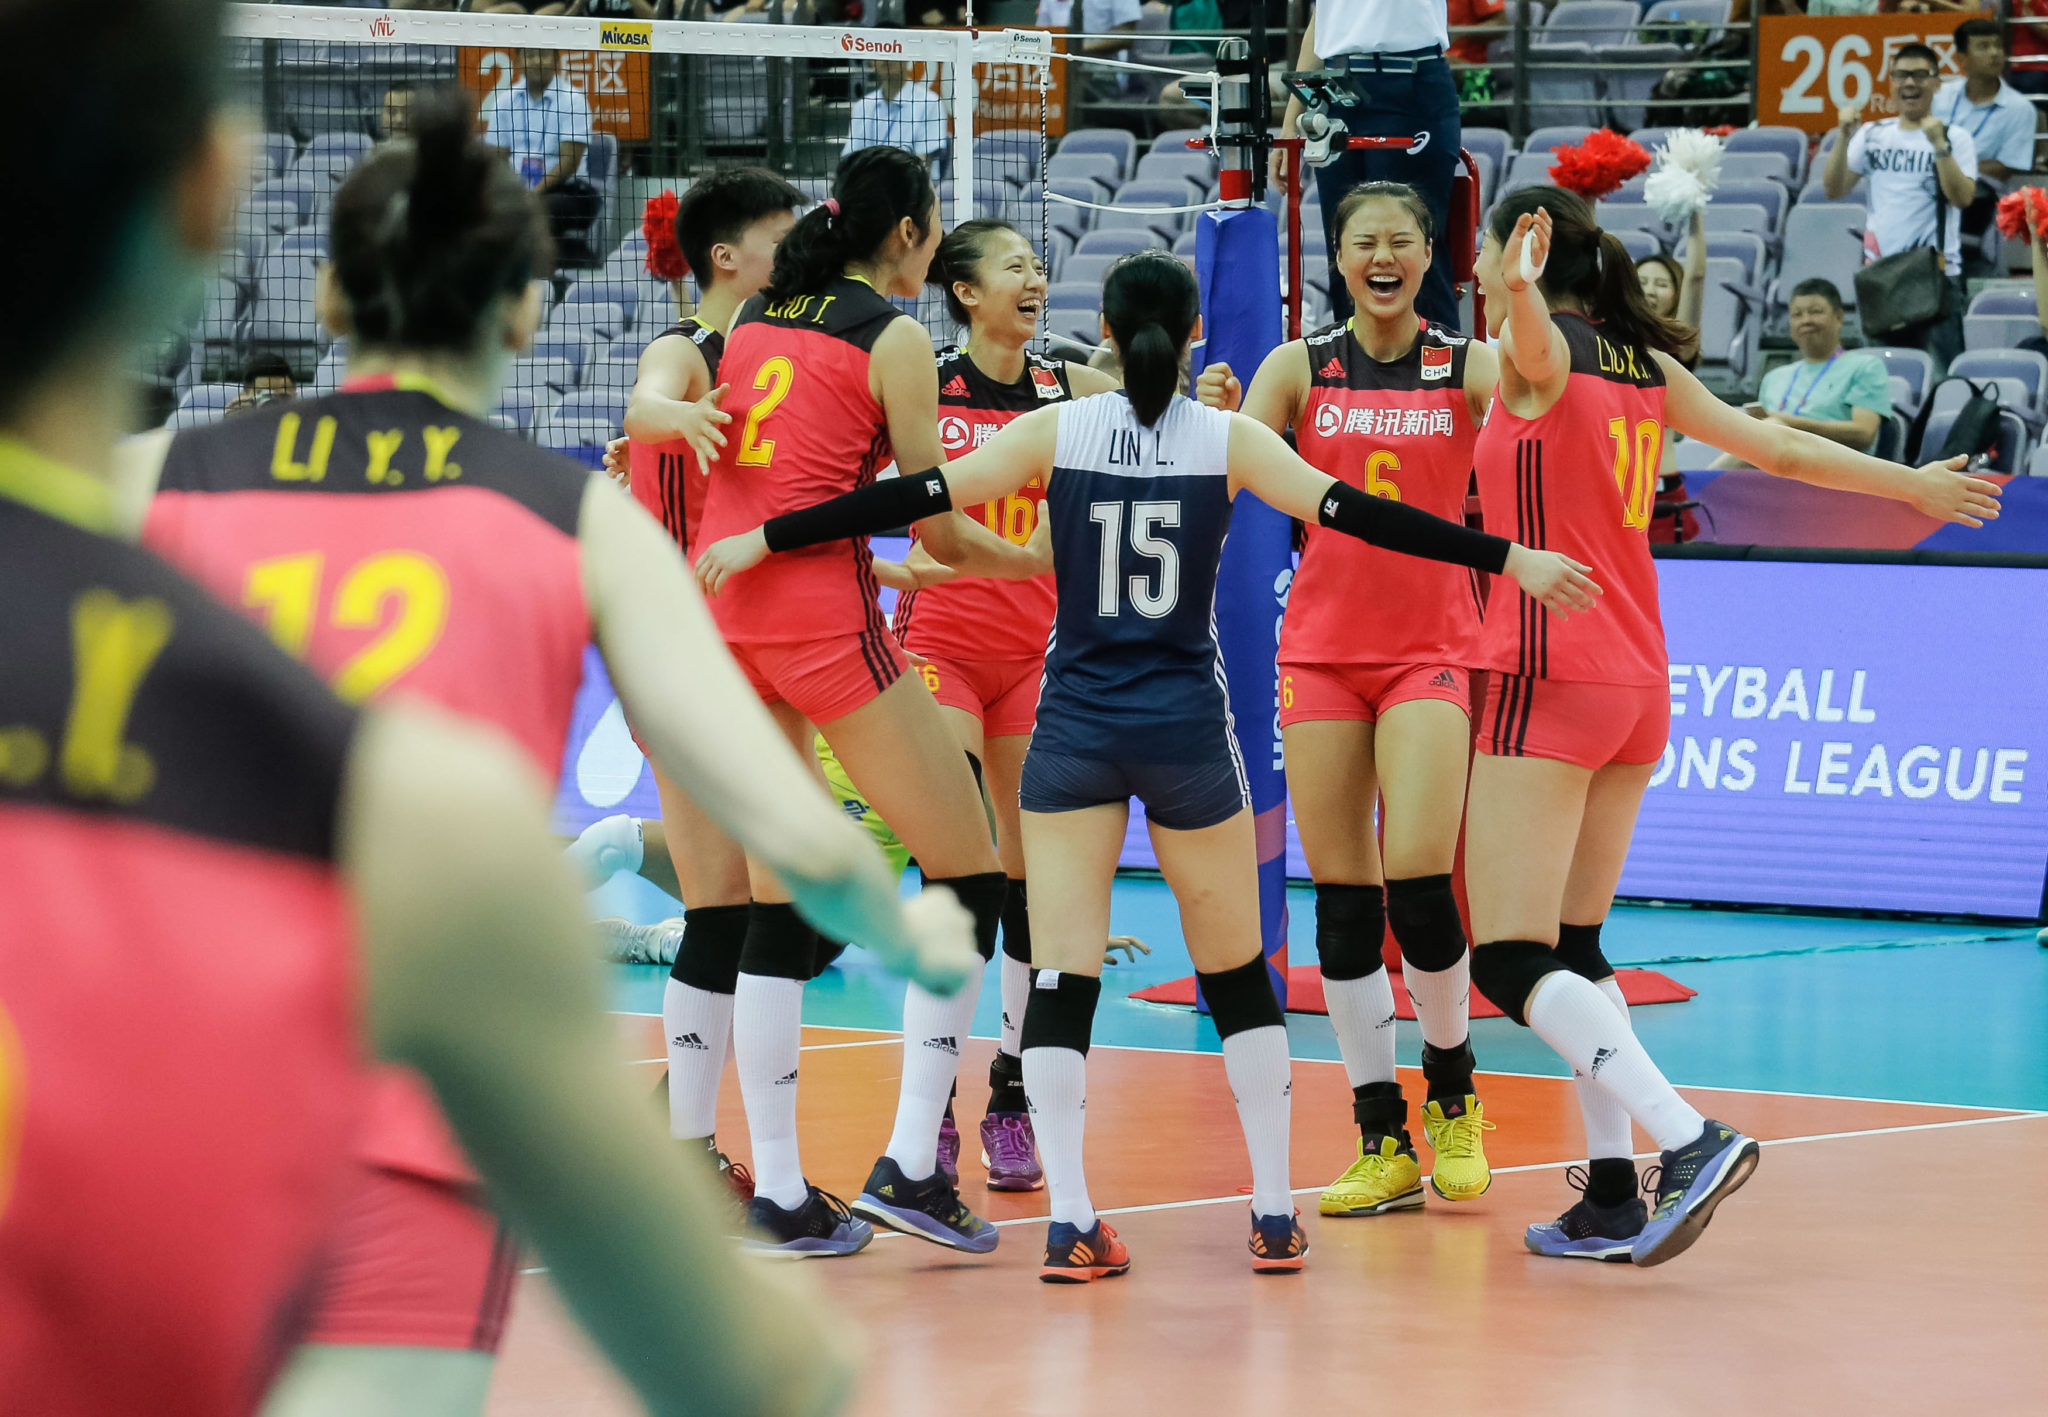 2022年排球比赛表(中国女排“2022世界女排联赛”分站小组赛完全赛程)第一周第2小组 土耳其安卡拉第二周第4小组 菲律宾奎松市第三周第6小组 保加利亚索非亚“2022世界女排联赛”总决赛赛制